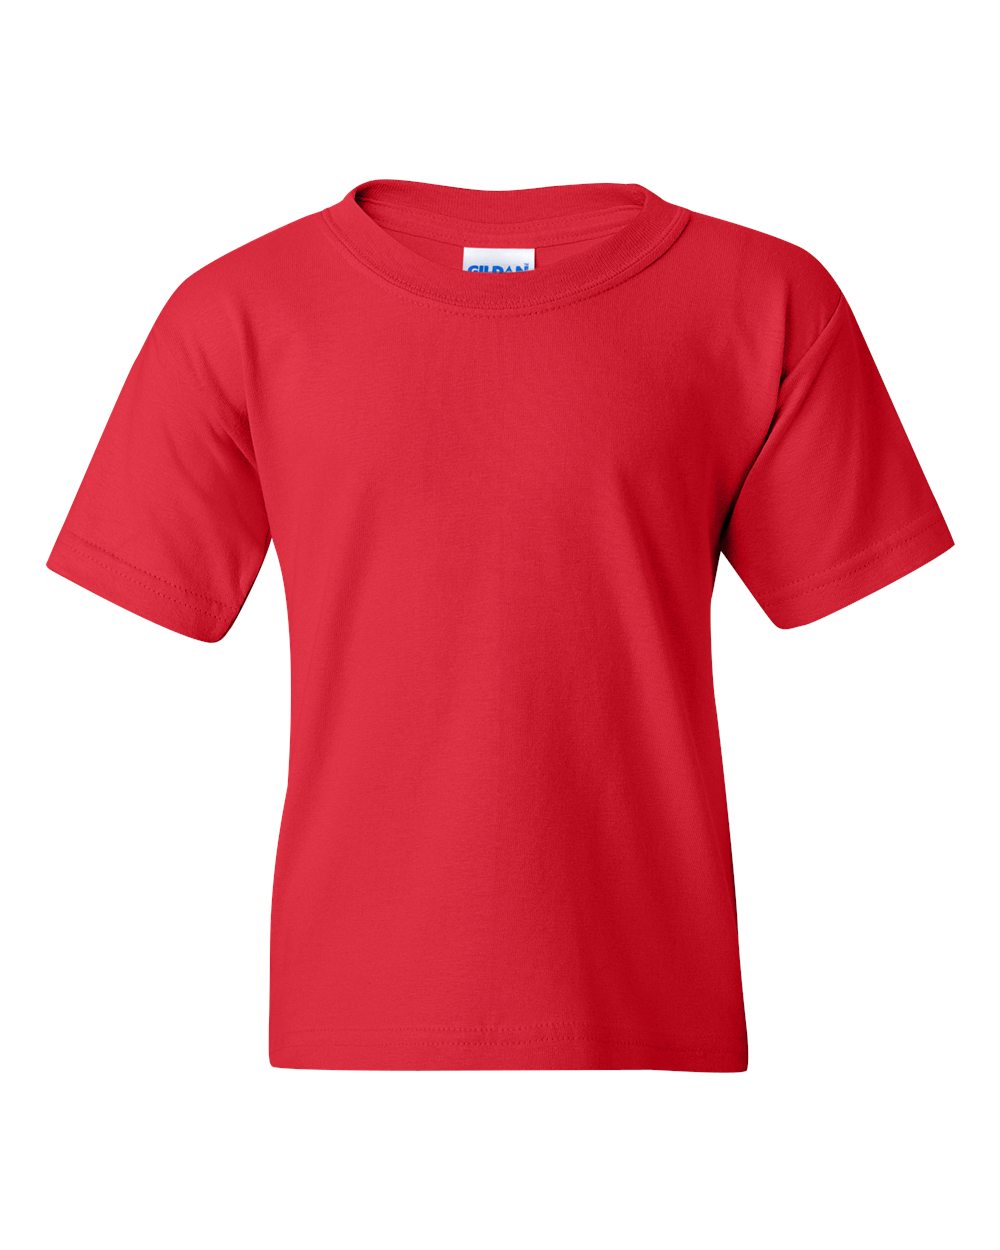 NIB - Big Girls T-Shirts and Tank Tops - Colorado Girl - image 2 of 5